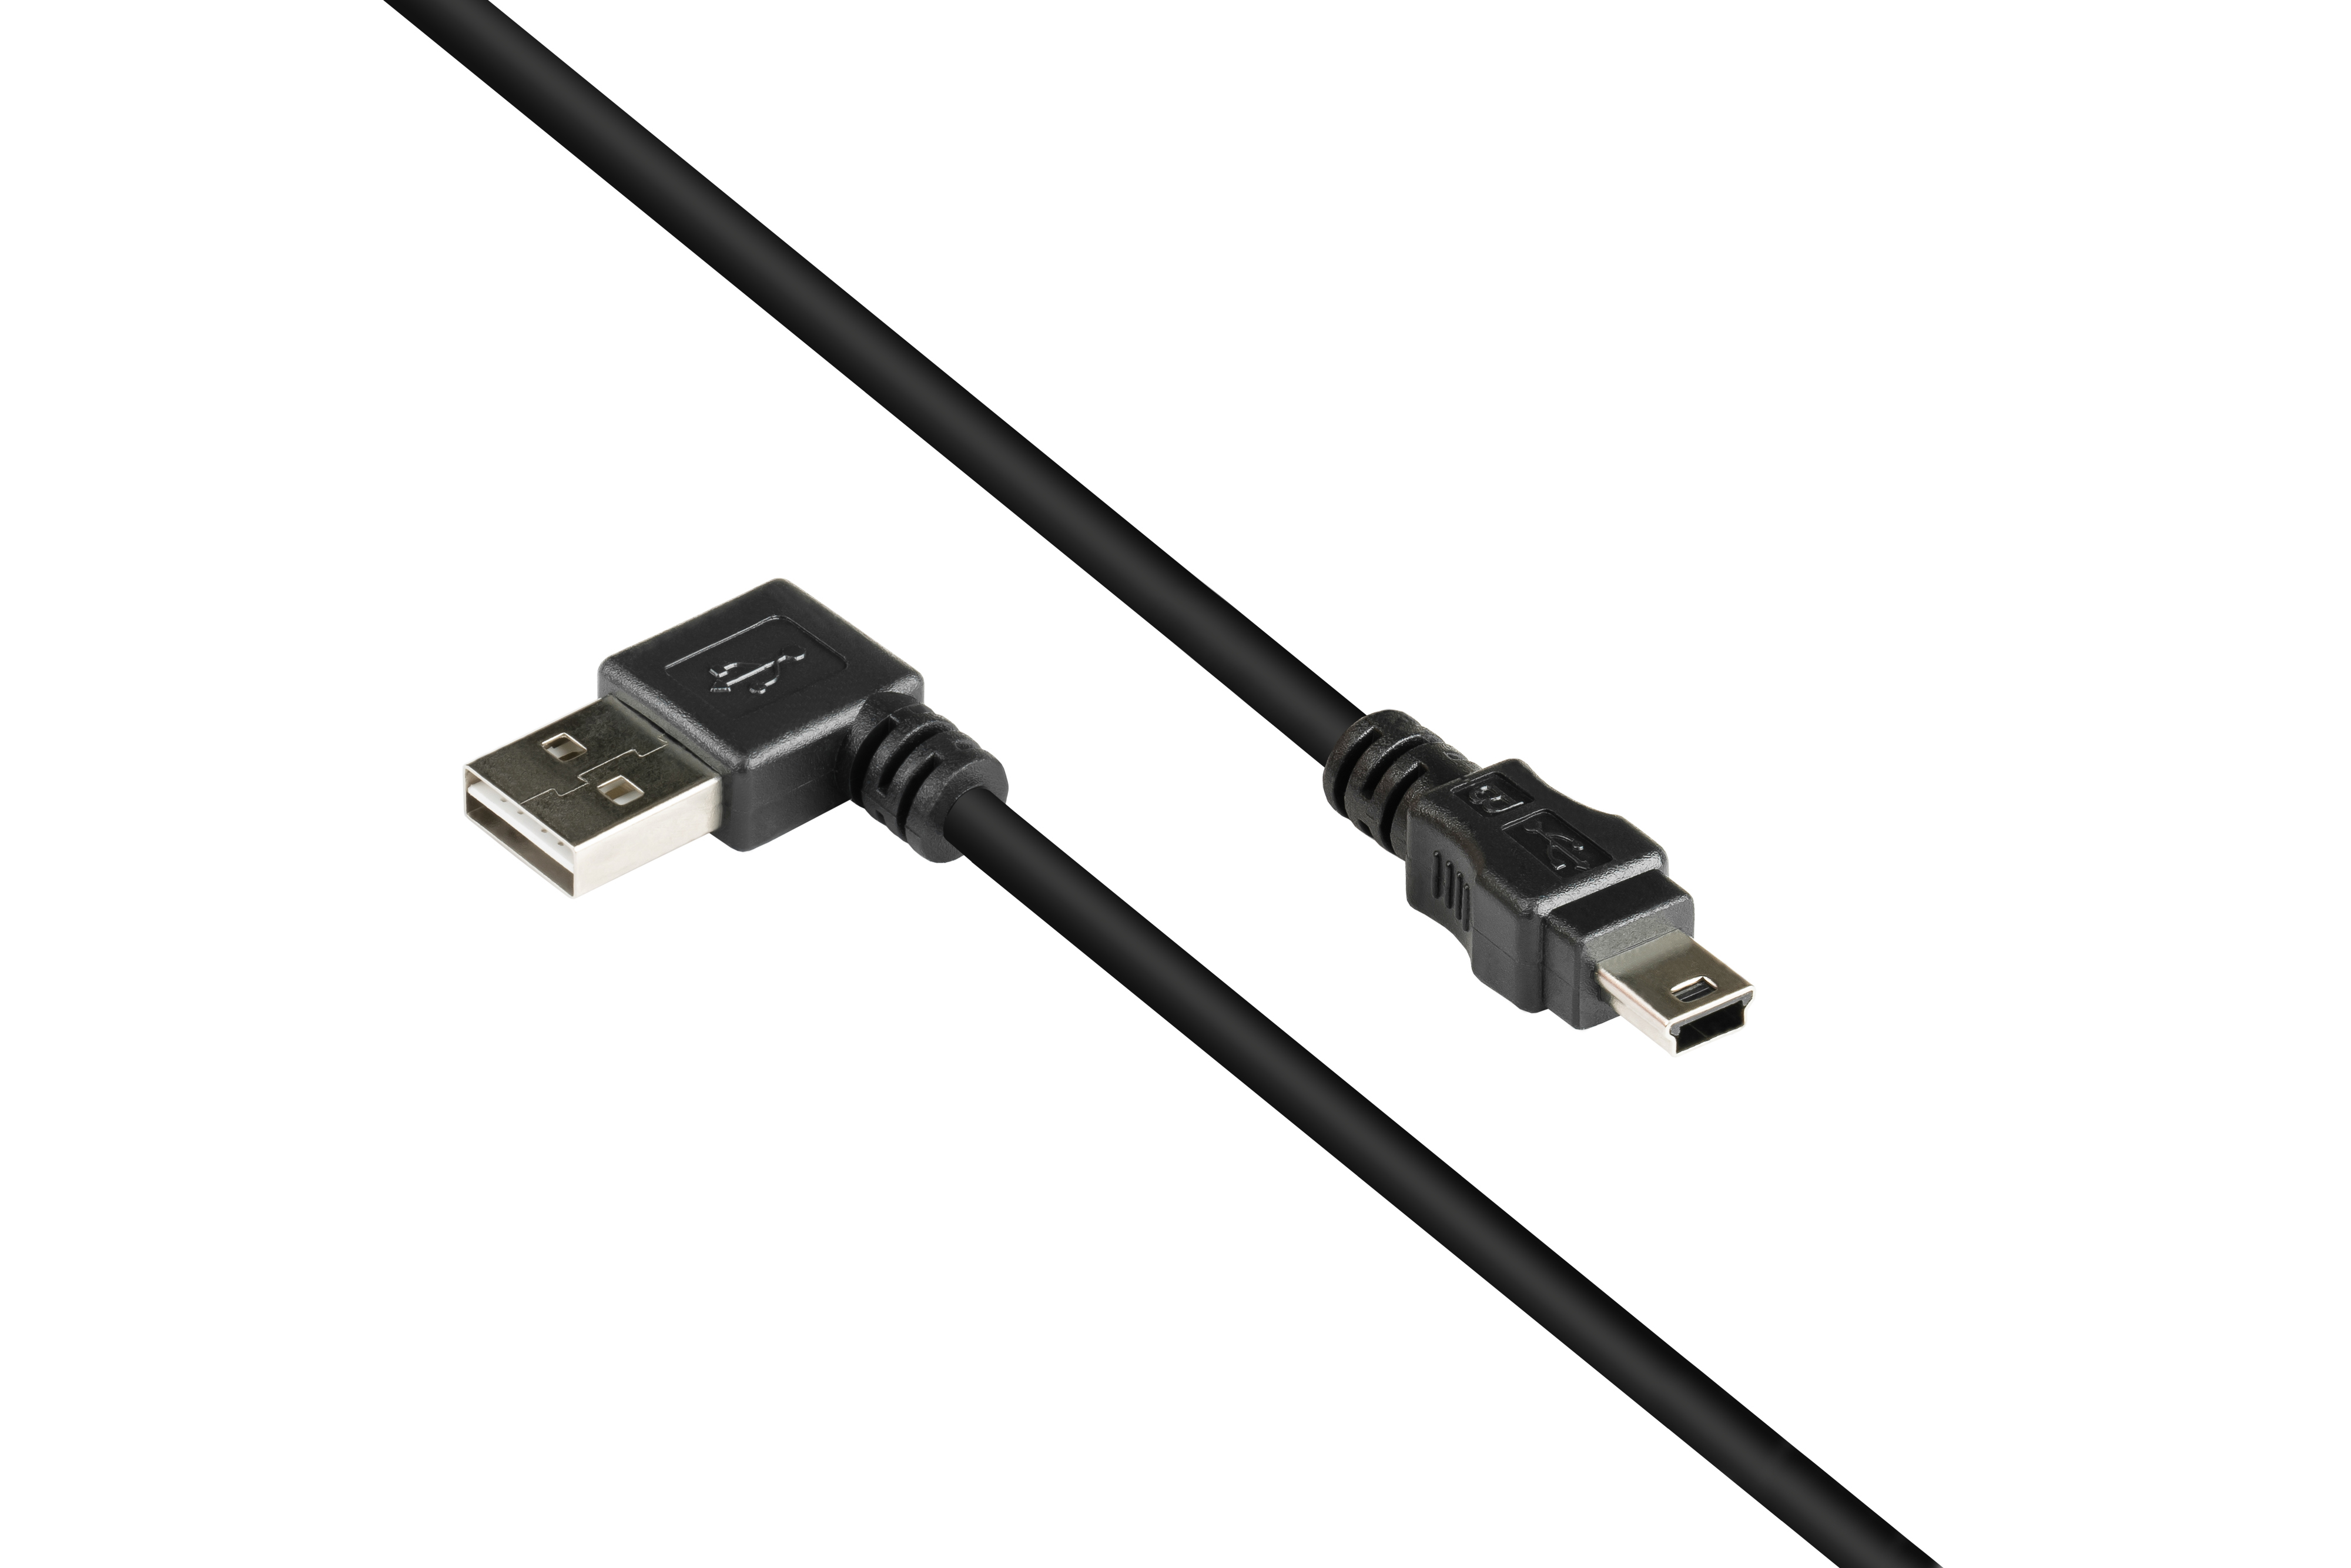 A Stecker Anschlusskabel USB 2.0 gewinkelt, KABELMEISTER Mini an schwarz B Stecker, EASY